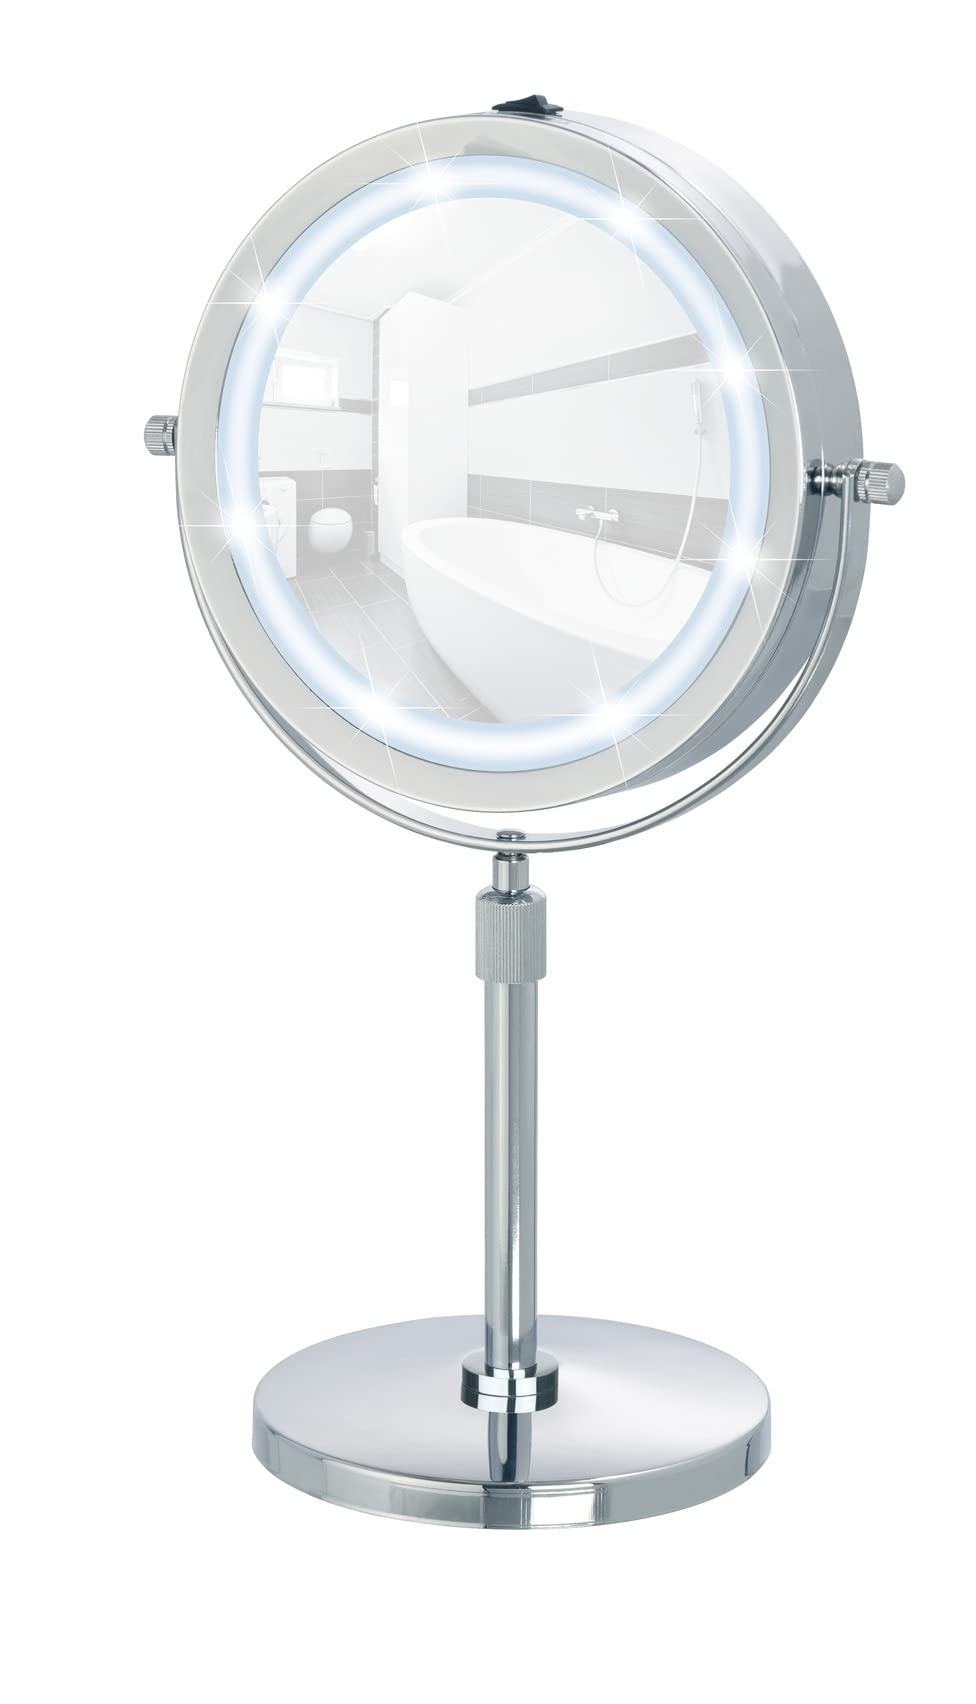 WENKO LED Kosmetikspiegel Lumi, Spiegelfläche ø 17.5 cm 500 % Vergrößerung, Stahl, 21 x 38-49 x 13.5 cm, Chrom